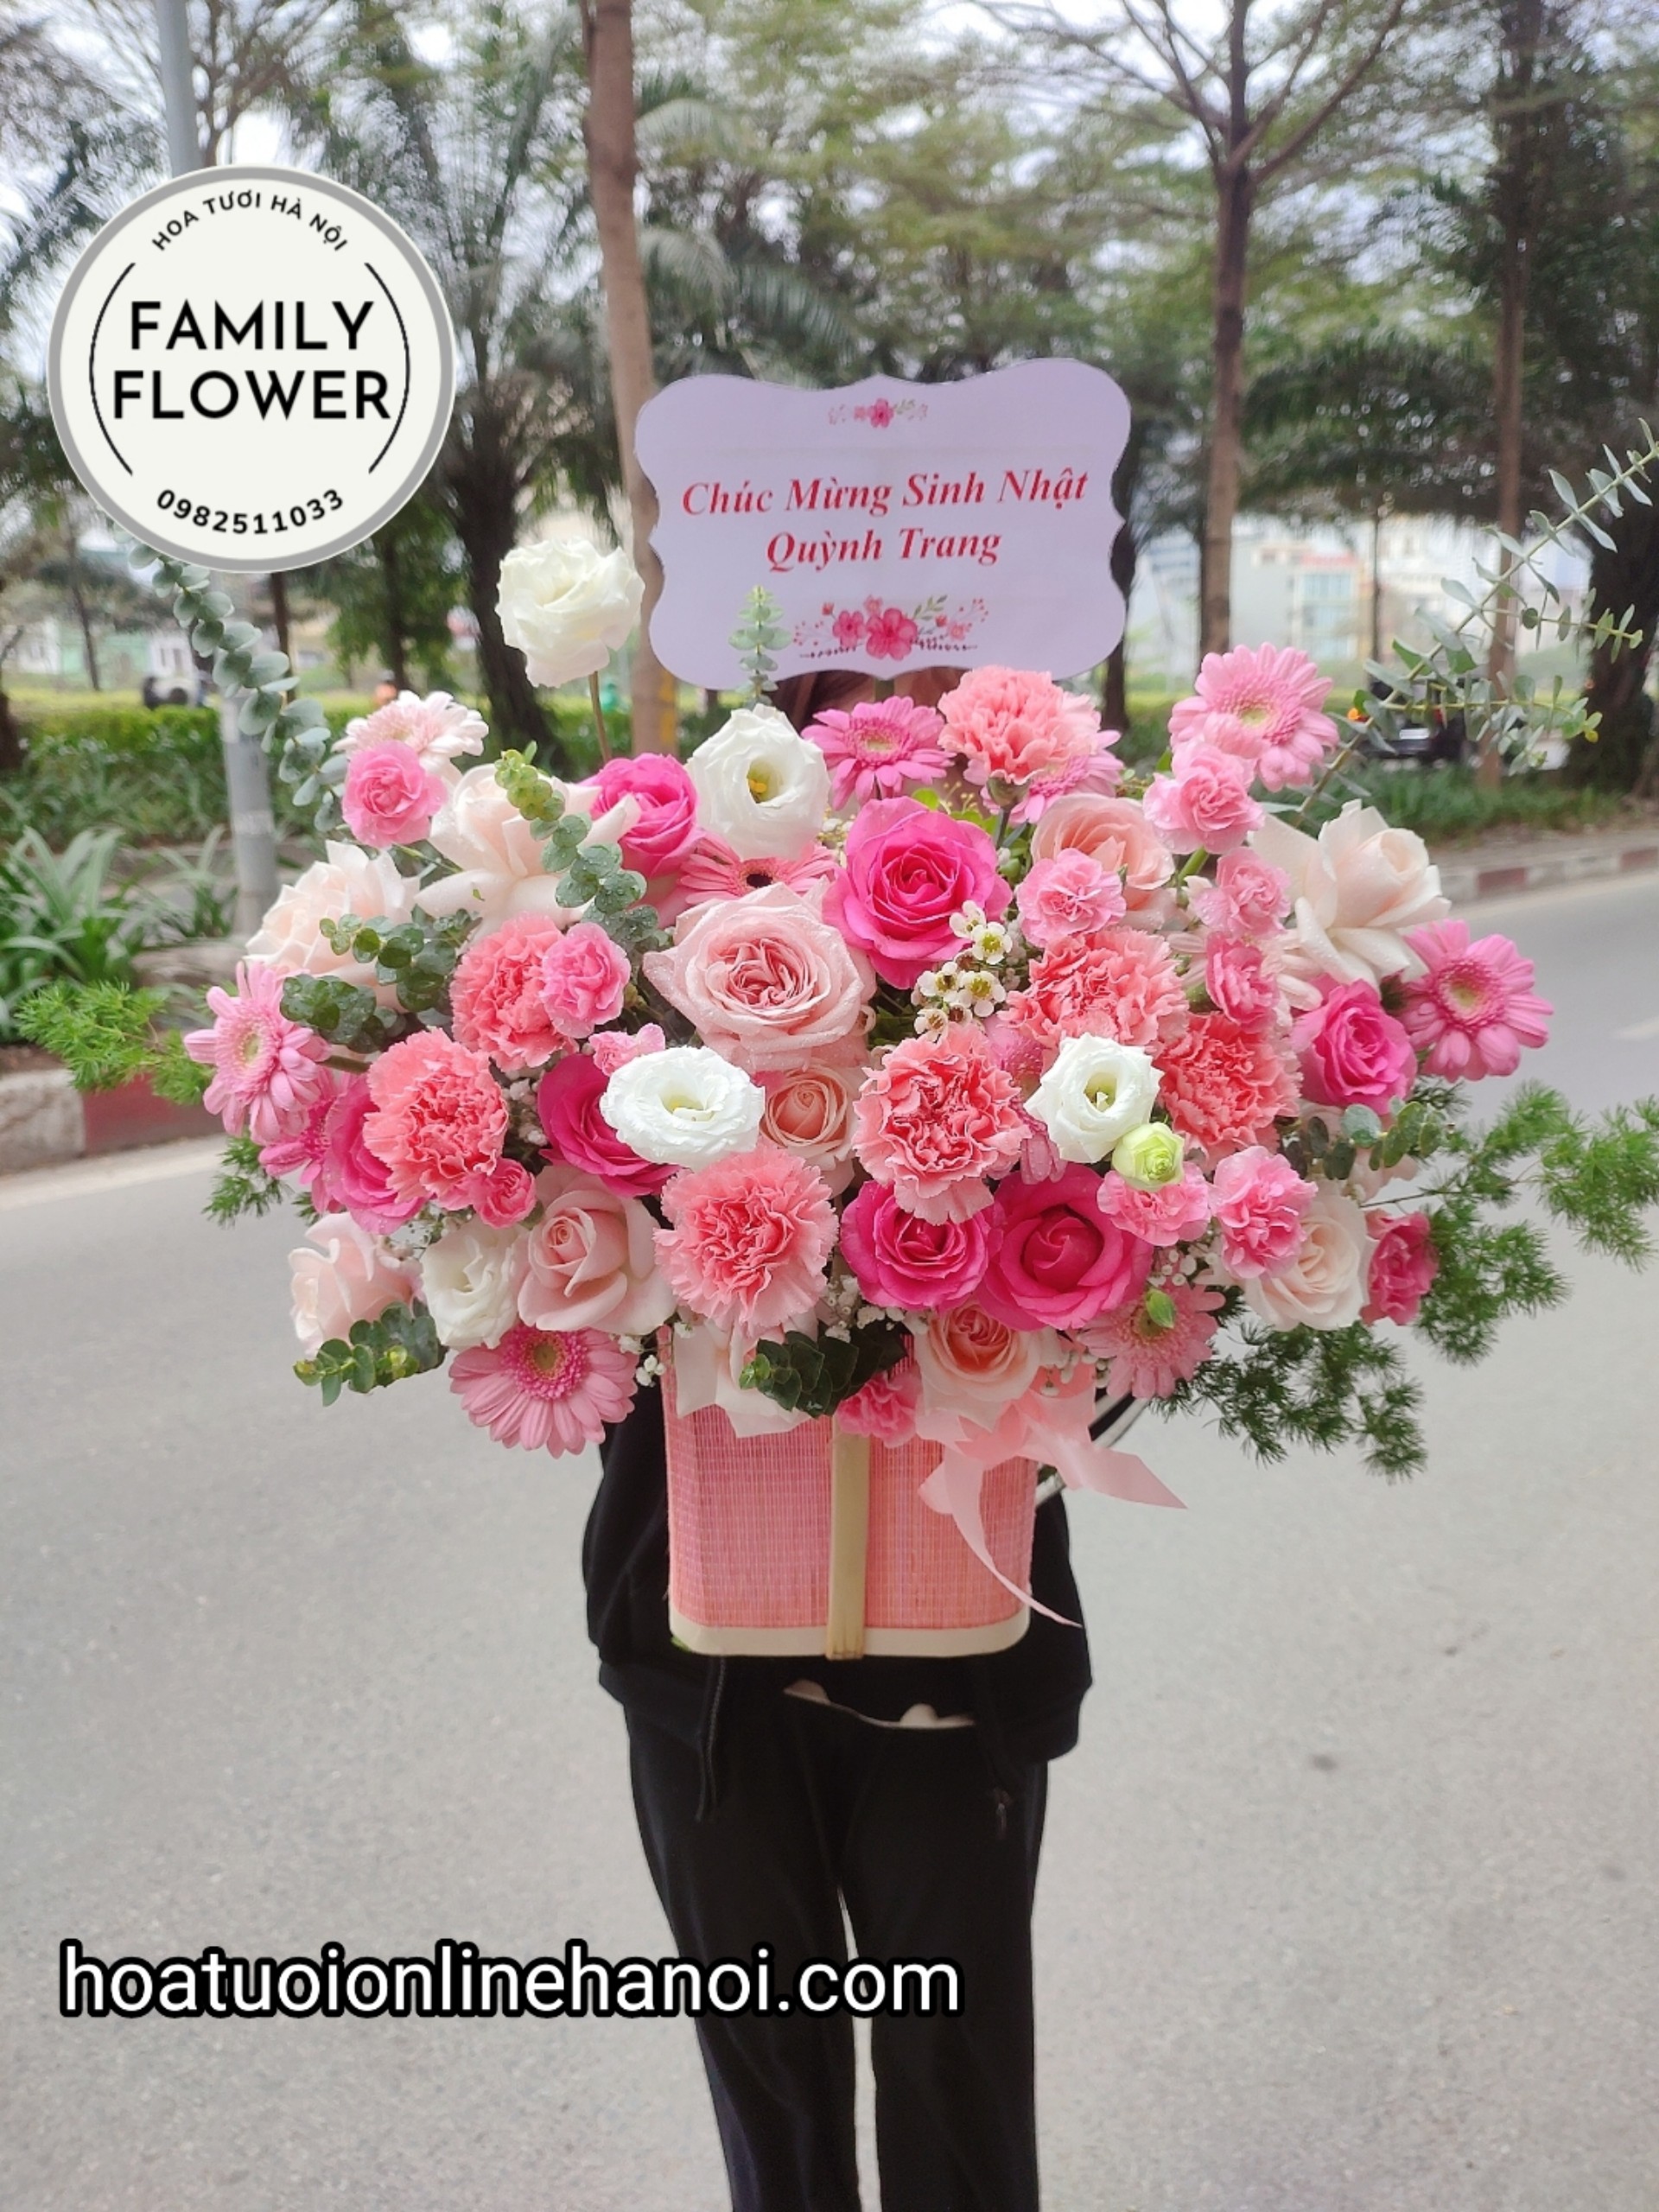 Hoa tươi chúc mừng sinh nhật tone hồng nhẹ nhàng tặng người yêu , bạn bè nhân dịp sinh nhật tại Hà Nội .